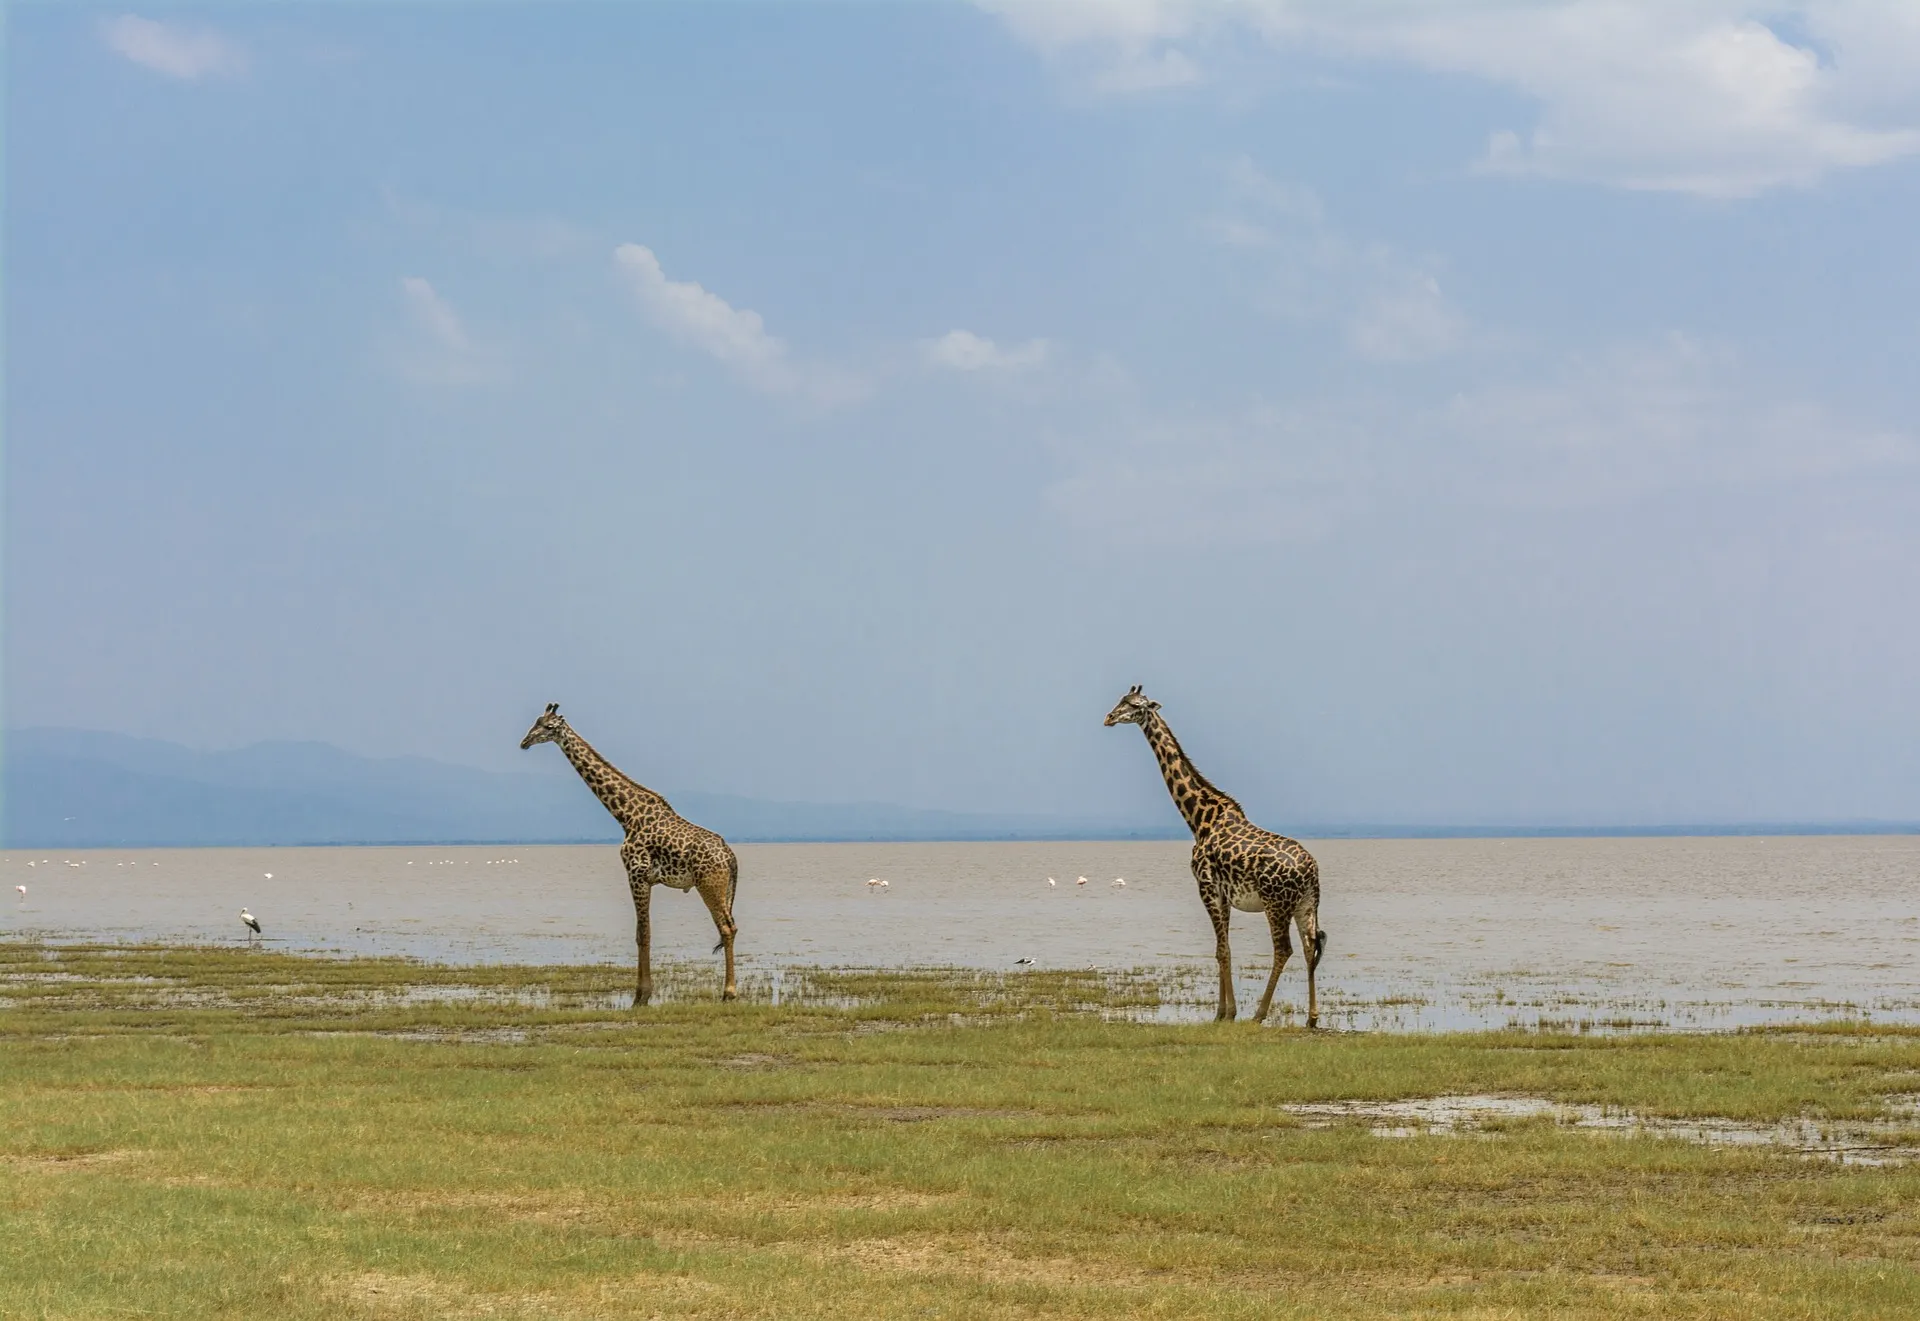 safaris kenya tanzania - giraffe